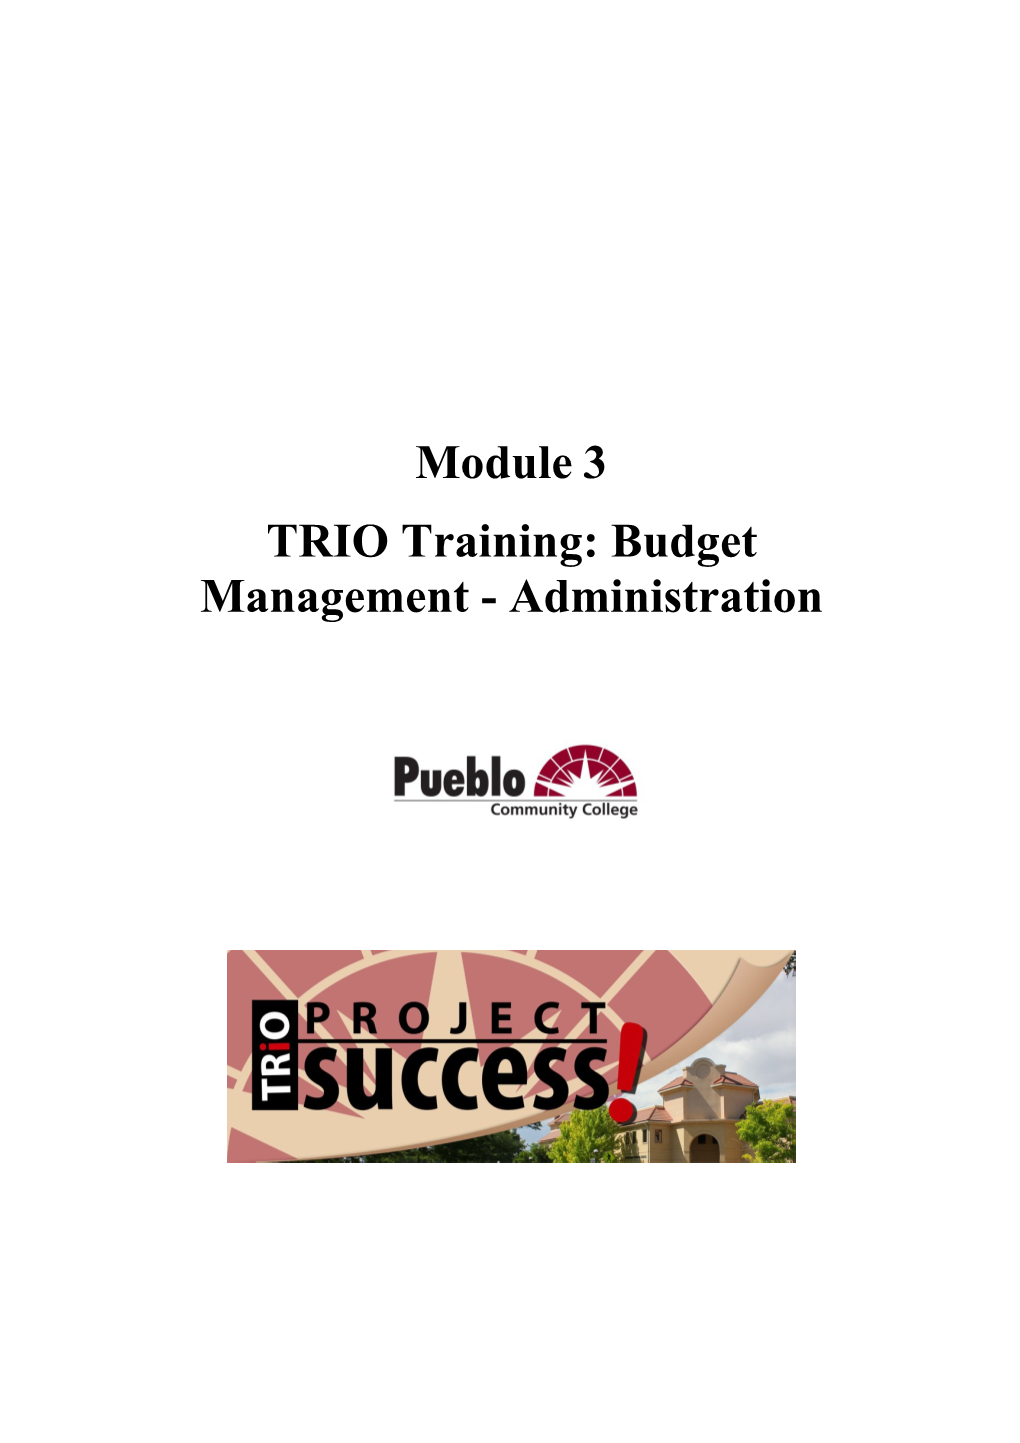 TRIO Training: Budget Management - Administration